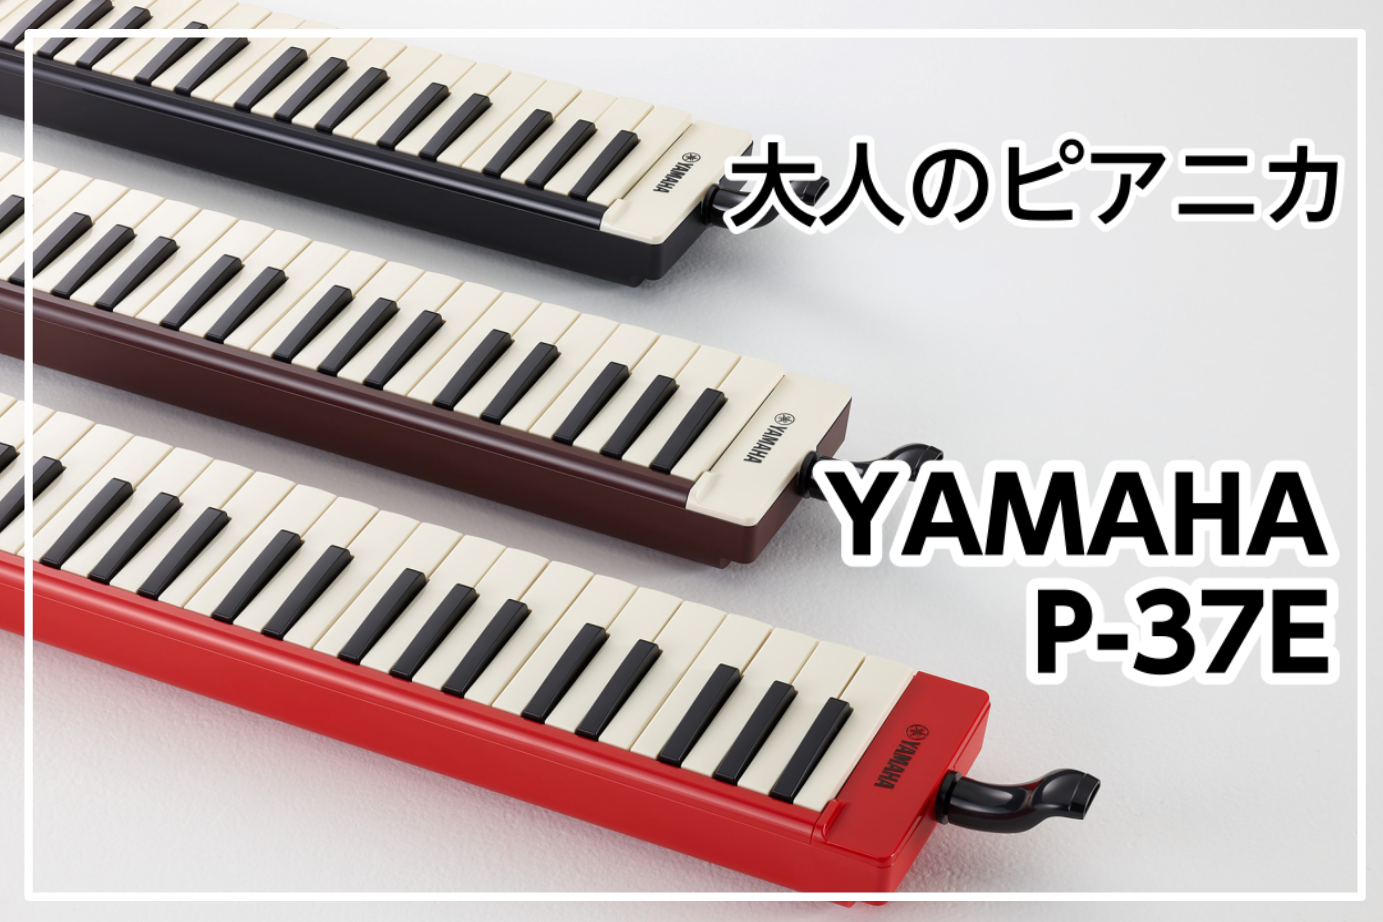 【大人のピアニカ】YAMAHA P-37E展示中！ 新色RED入荷！